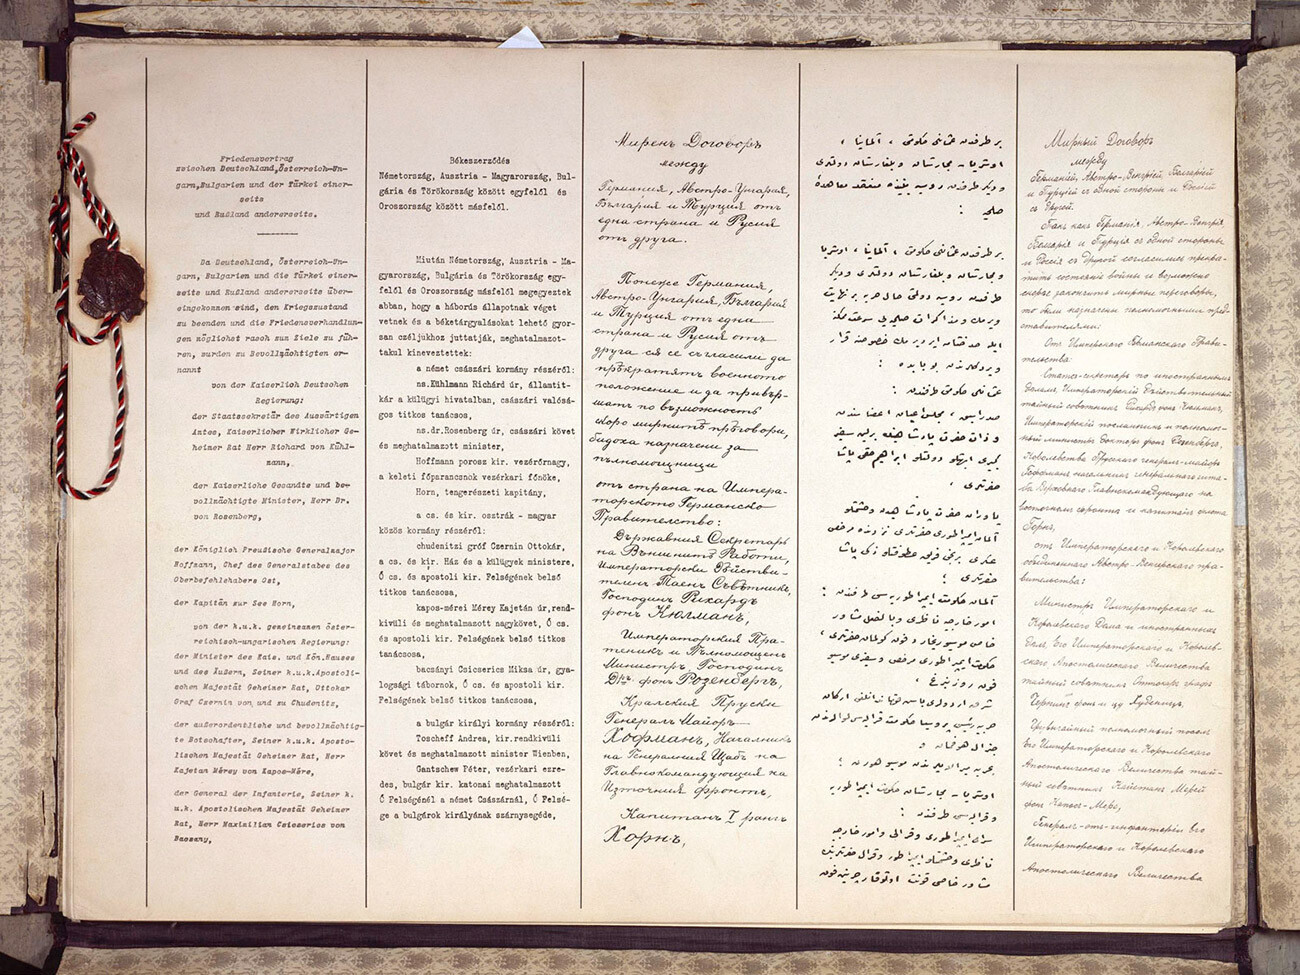 Photocopie de la première page du traité de Brest-Litovsk. De gauche à droite, les colonnes sont écrites en allemand, hongrois, bulgare, turc ottoman et russe